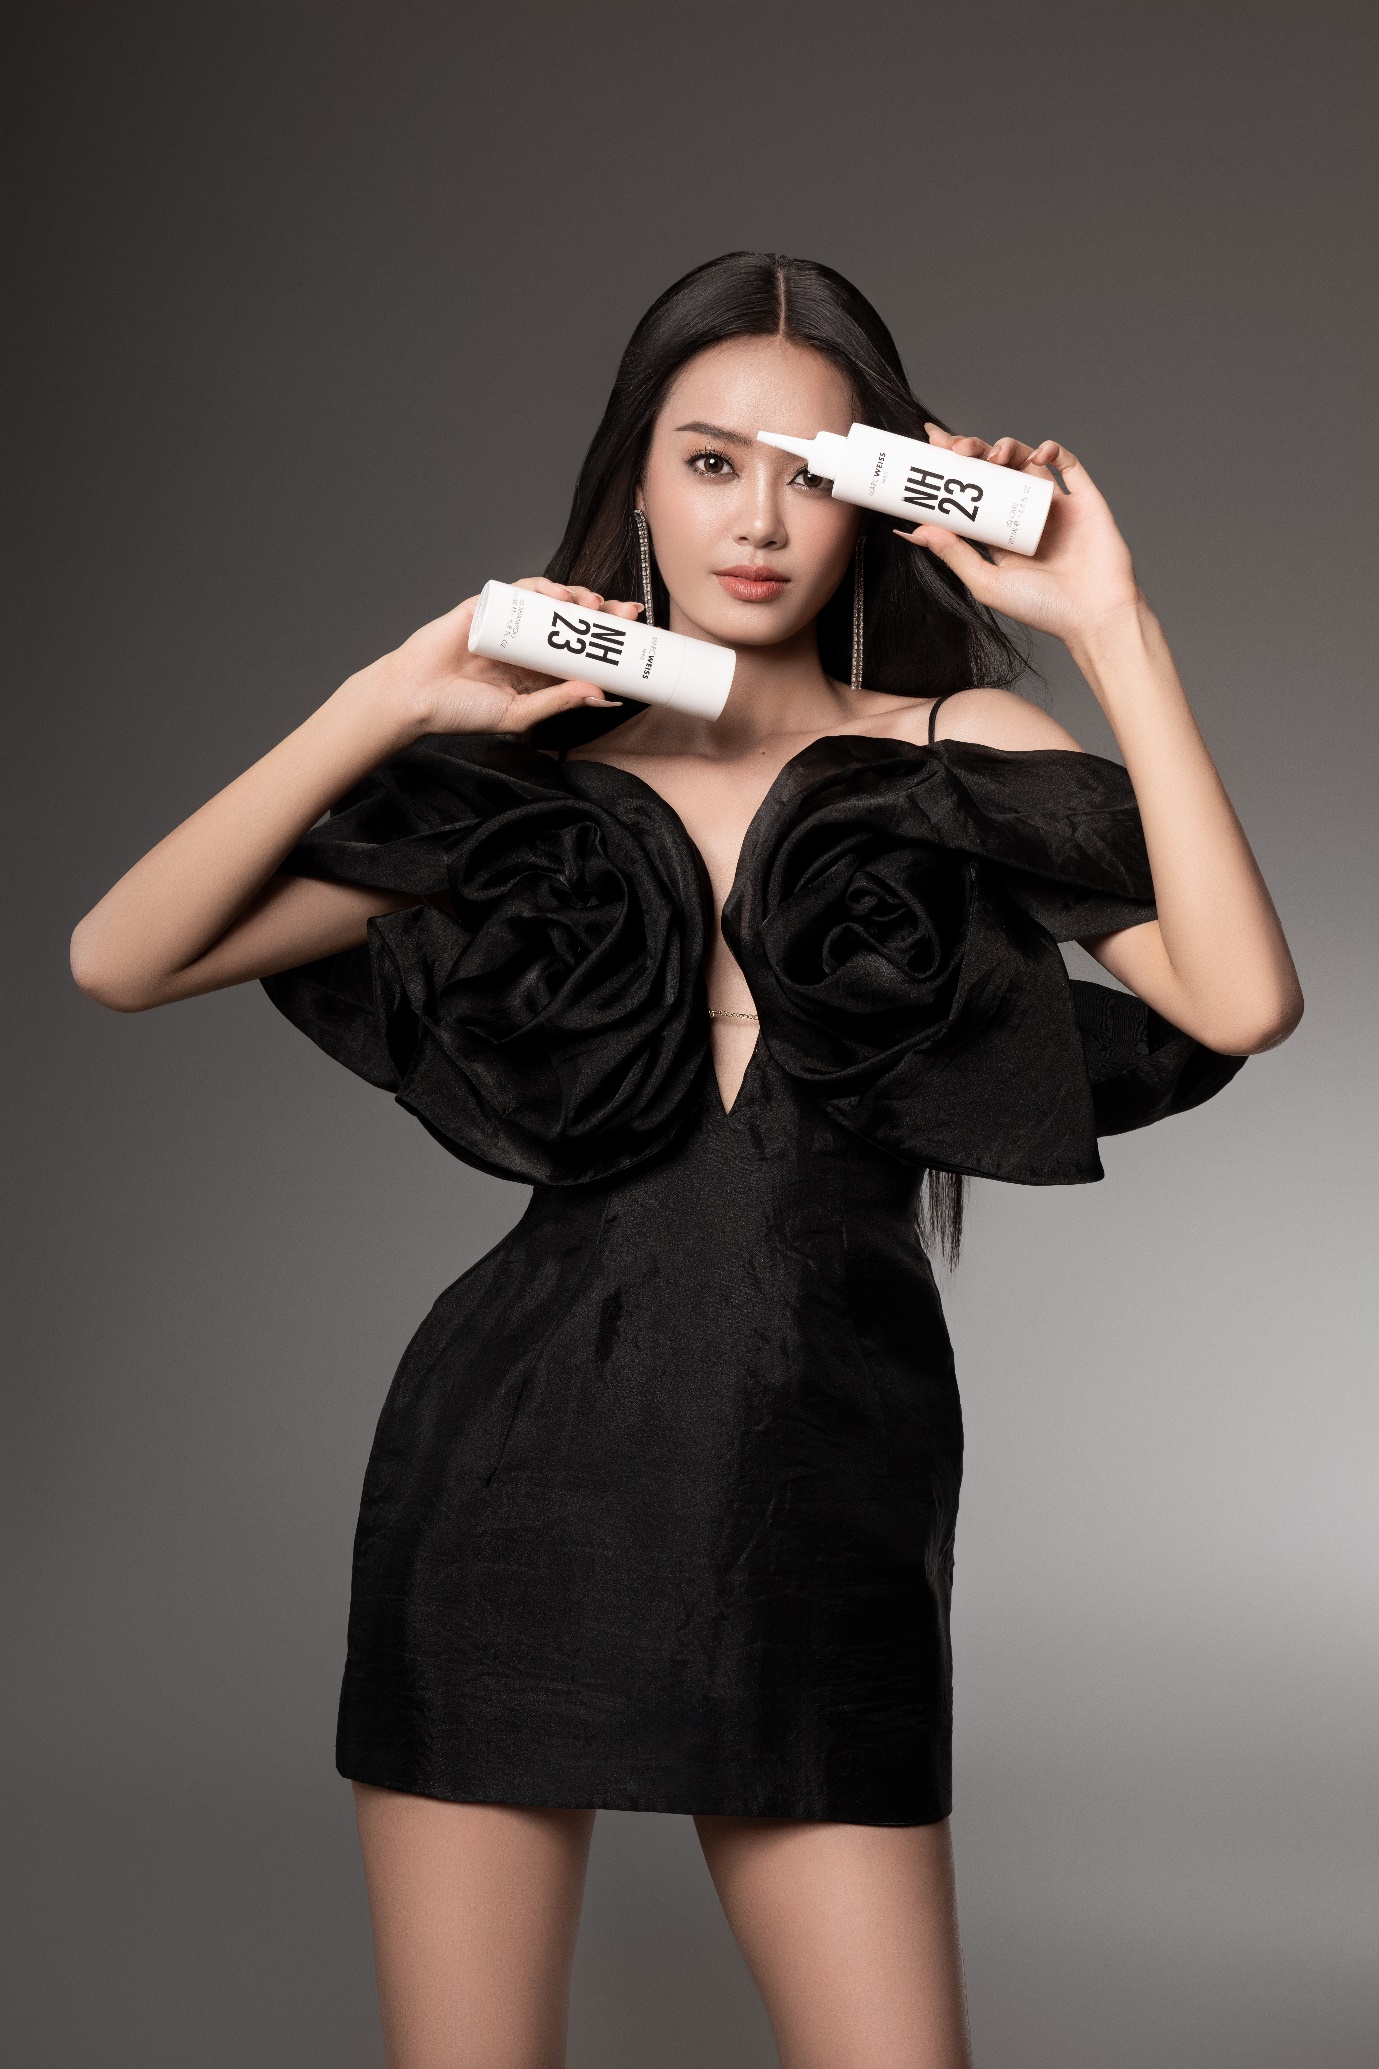 “Làm đẹp tóc” đơn giản ngay tại nhà cùng Á hậu Bùi Khánh Linh và thương hiệu NH23 - Ảnh 3.